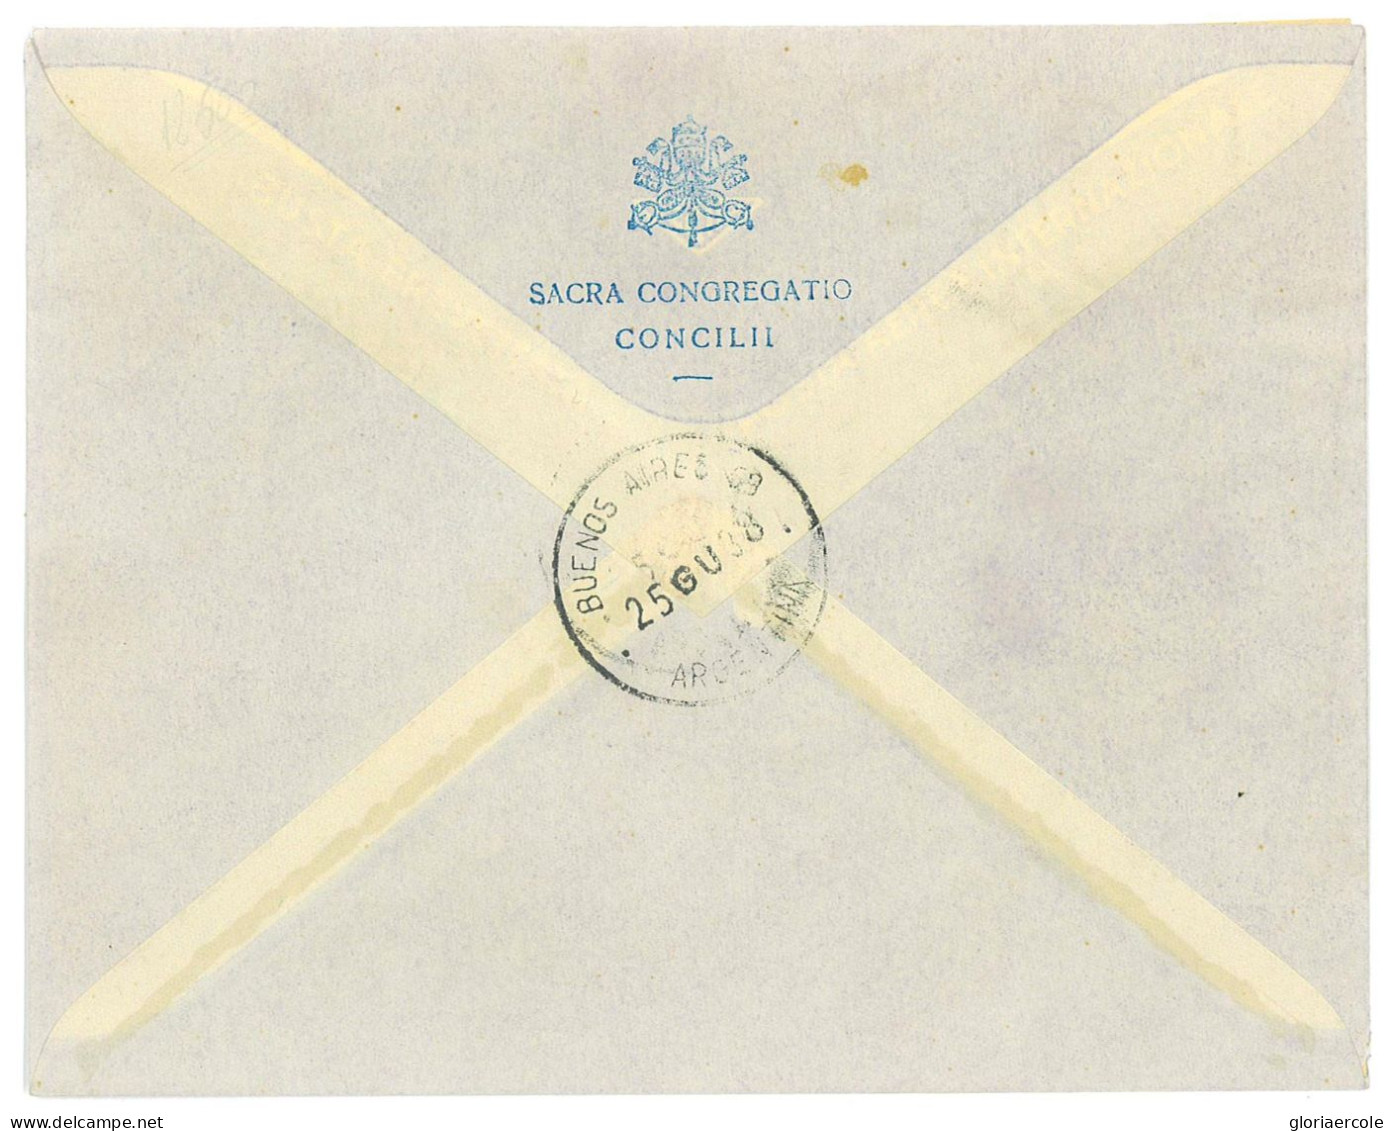 P2741 - VATICANO PA 1/8 22.6.1938 SU BUSTA FDC INDIRIZZATA AL CARDINALE COPELLO, OBISPO DI BUENOS AIRES. - Covers & Documents